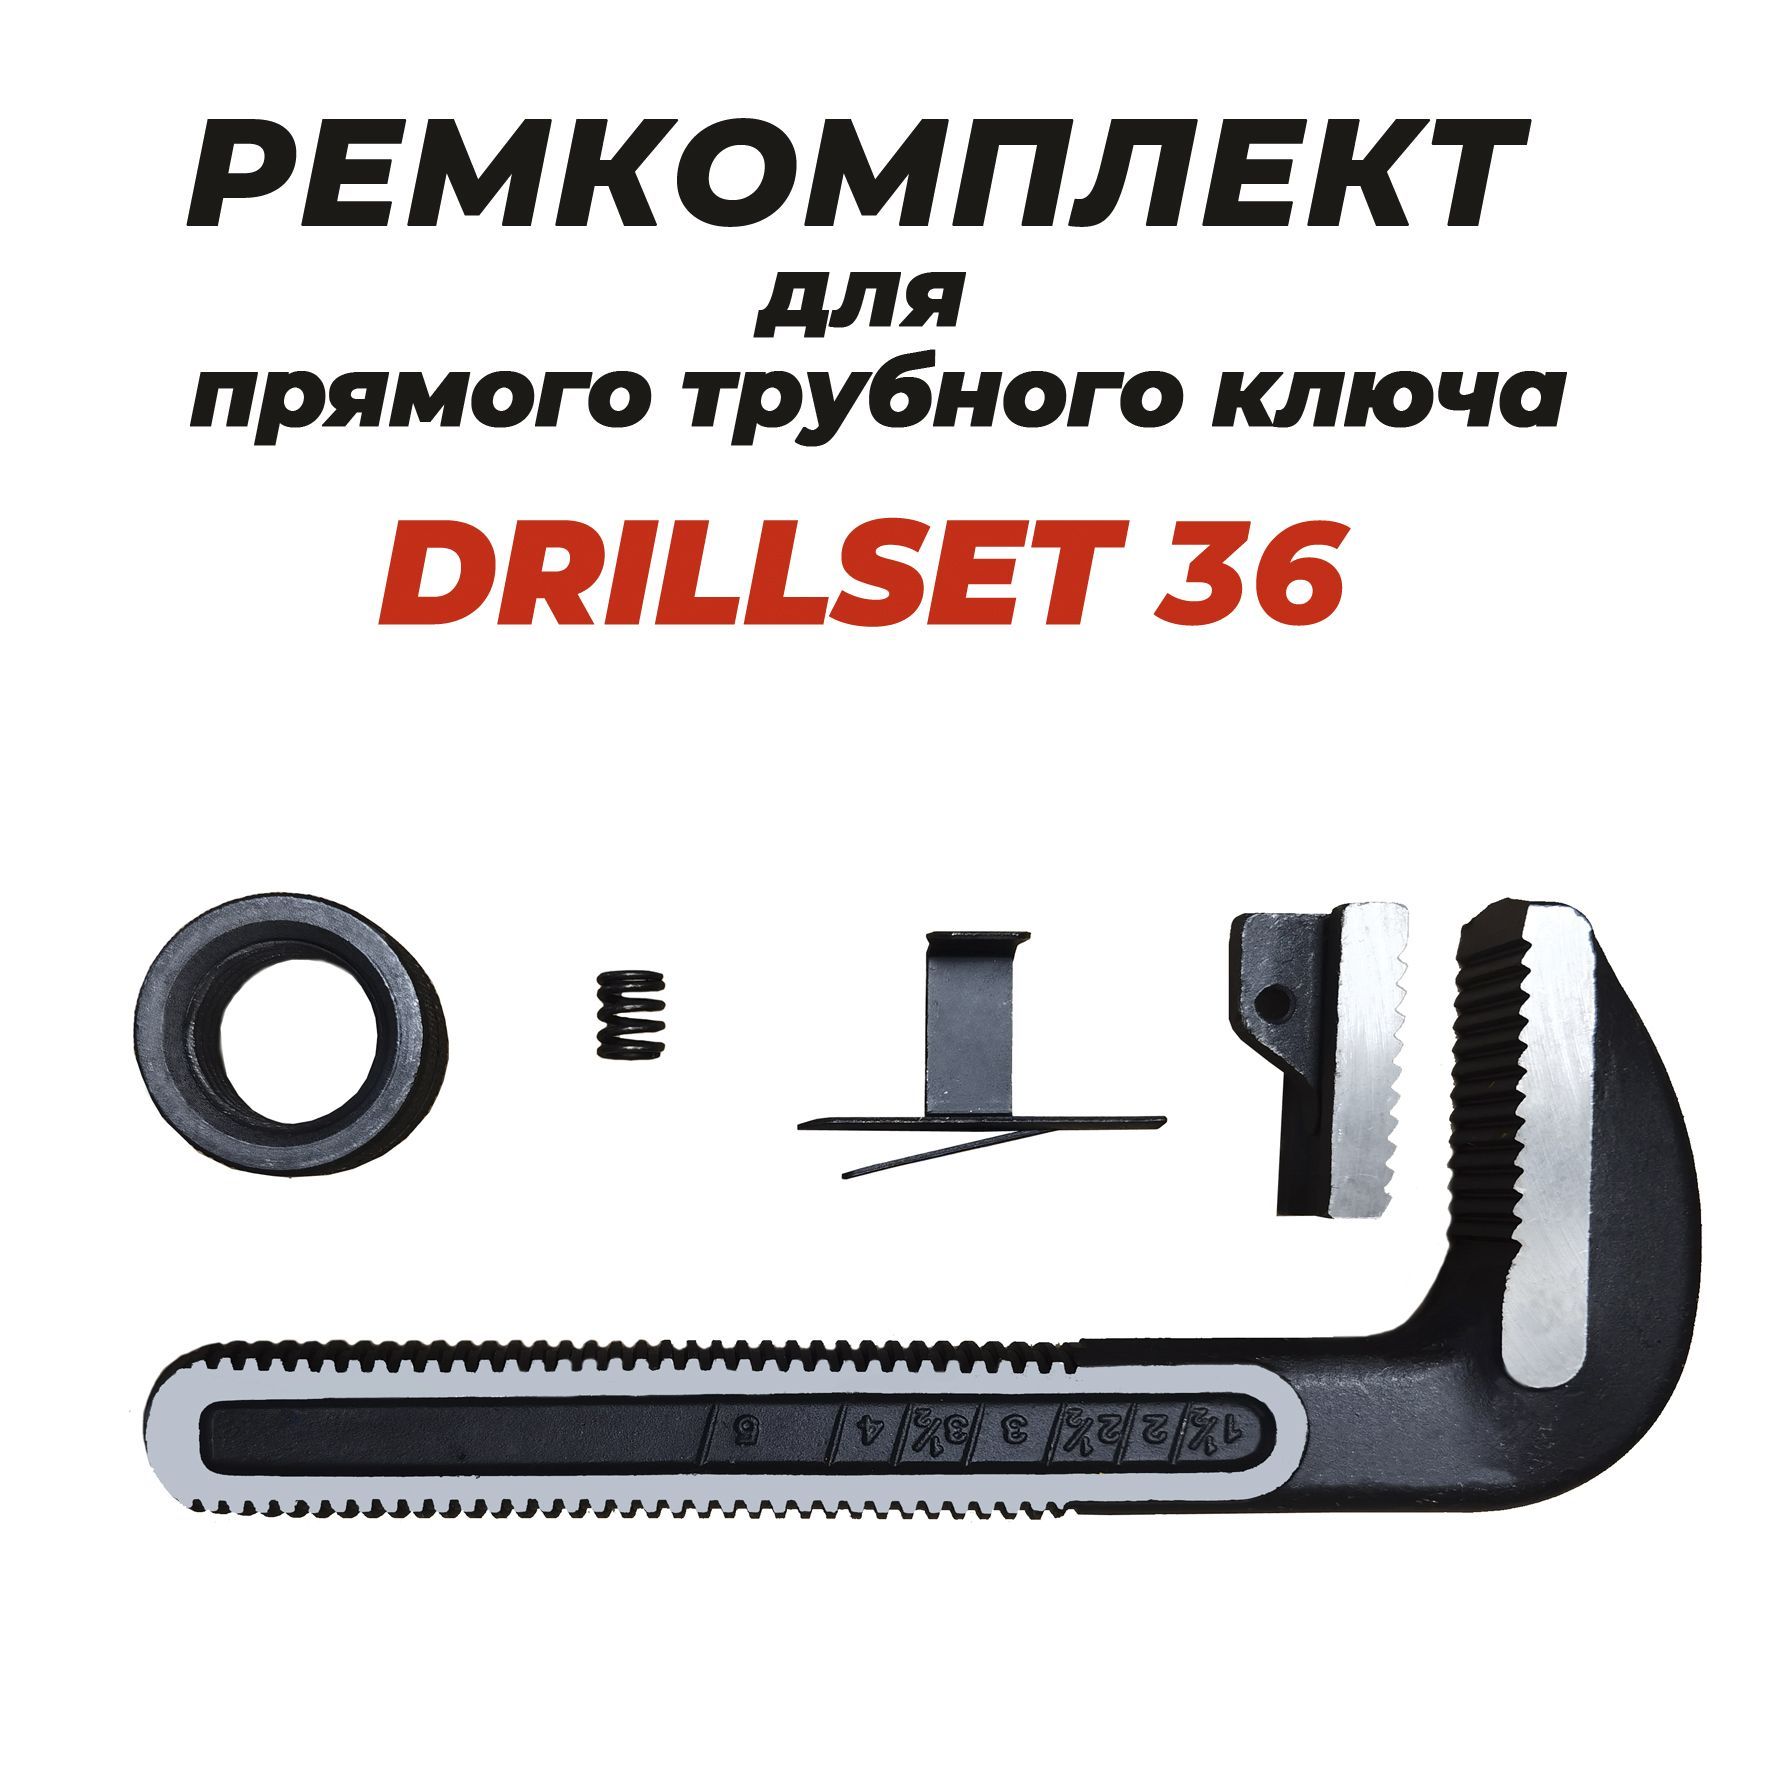 Ремкомплект для прямого трубного ключа DRILLSET36 штифт для 36 прямого трубного ключа ridgid